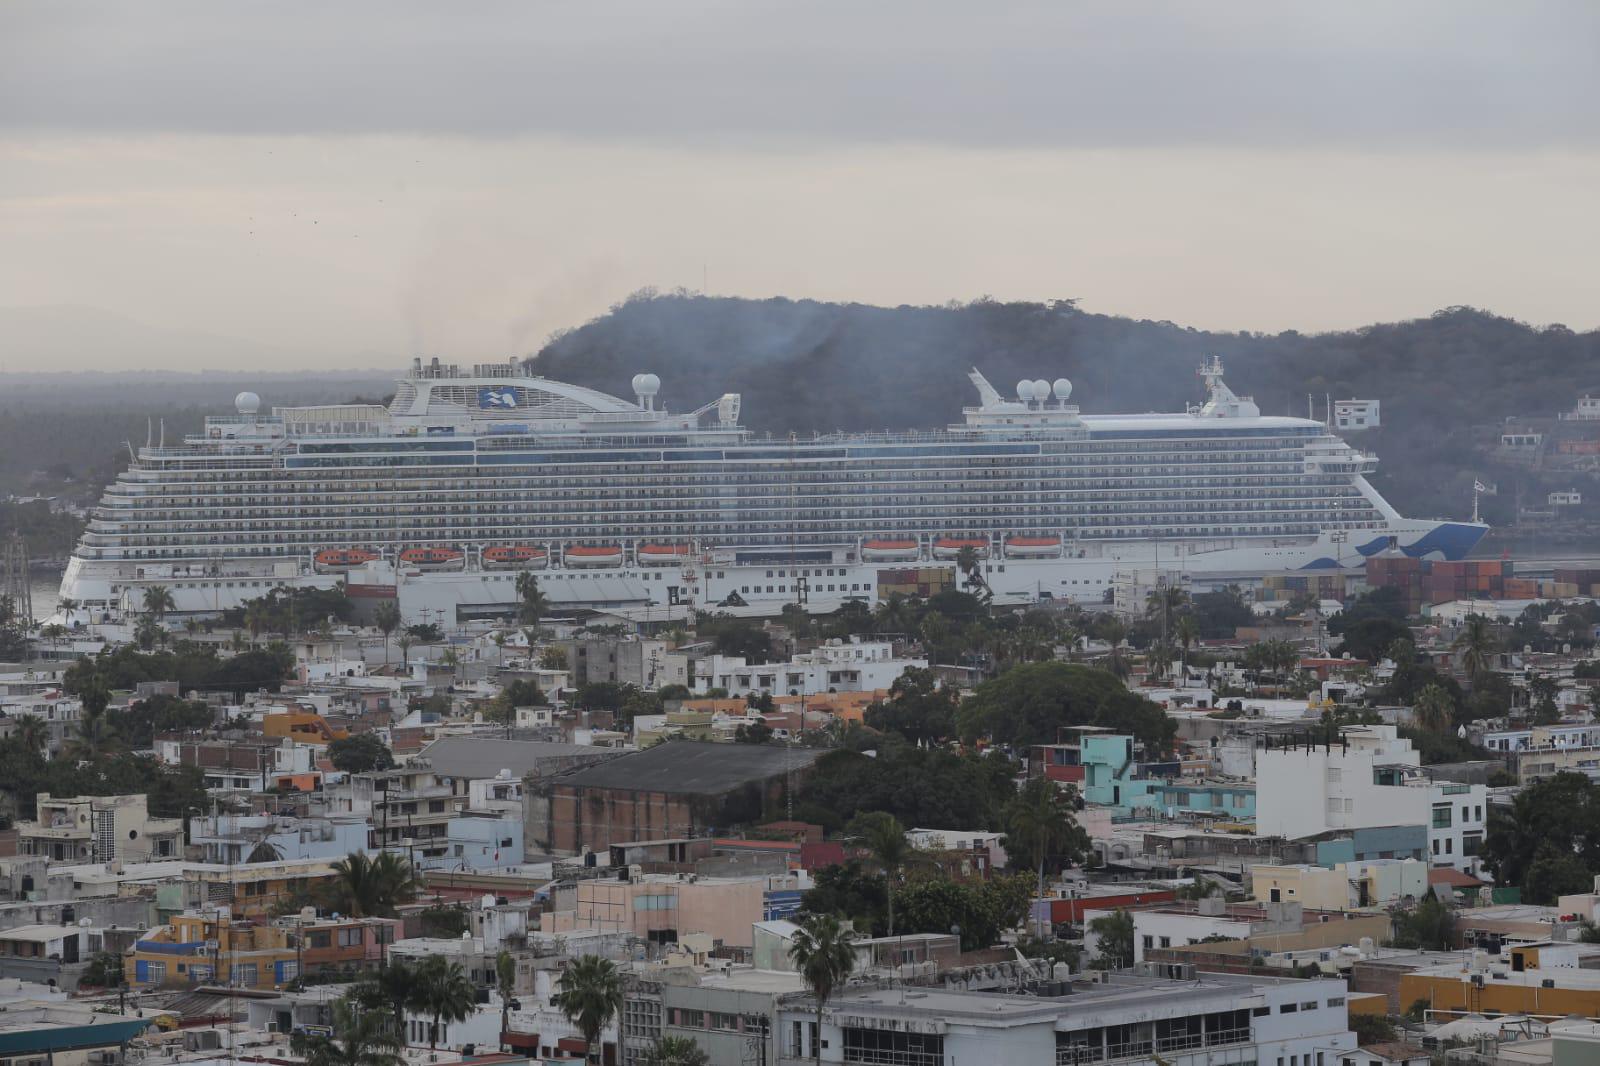 $!En toda la Semana Santa no se va a acabar el turismo en Mazatlán, promete el Alcalde